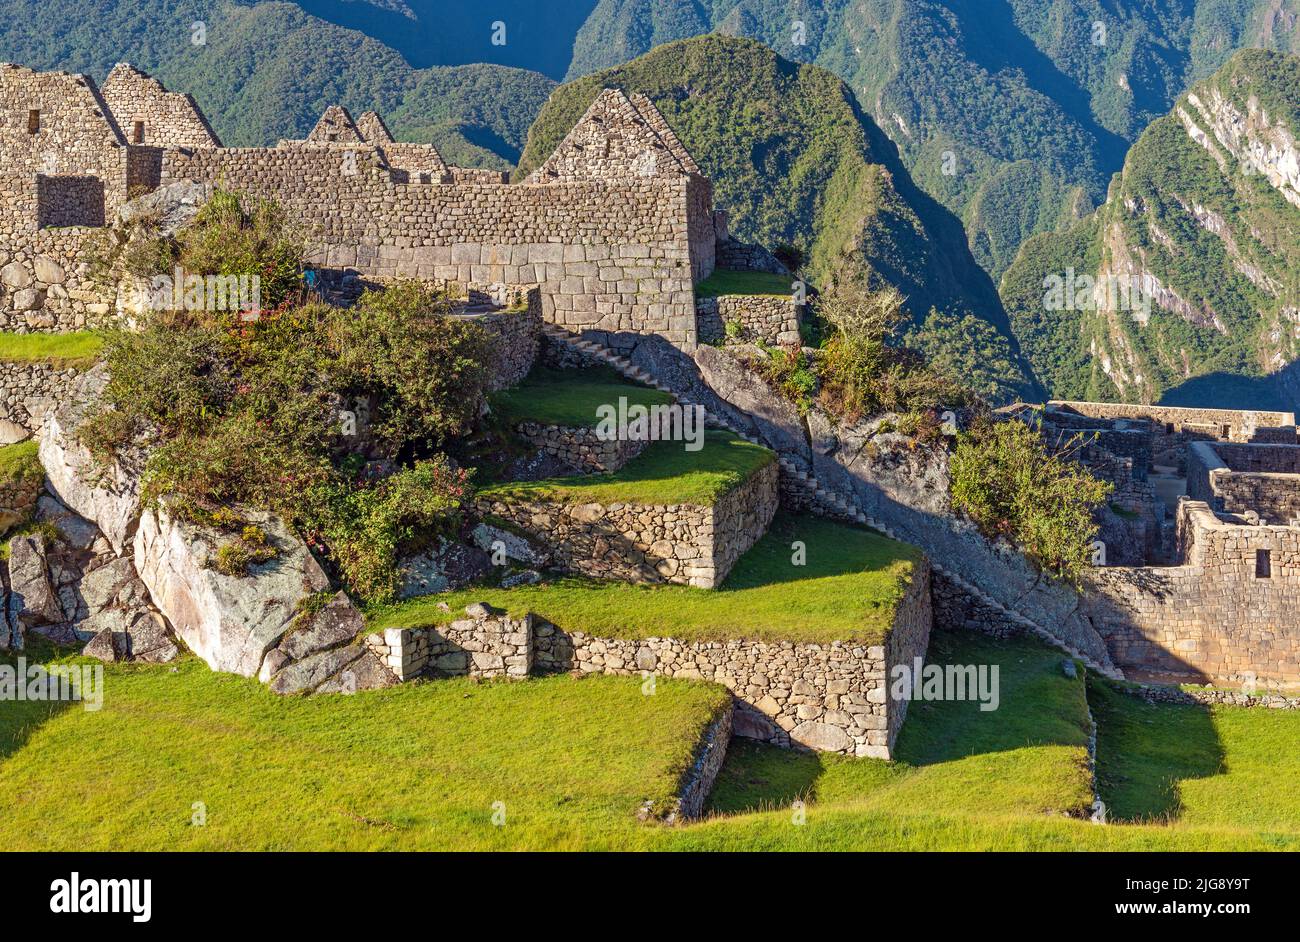 Arquitectura de Machu Picchu con escaleras, paredes, casas y terrazas agrícolas, Santuario Histórico de Machu Picchu, Cusco, Perú. Foto de stock